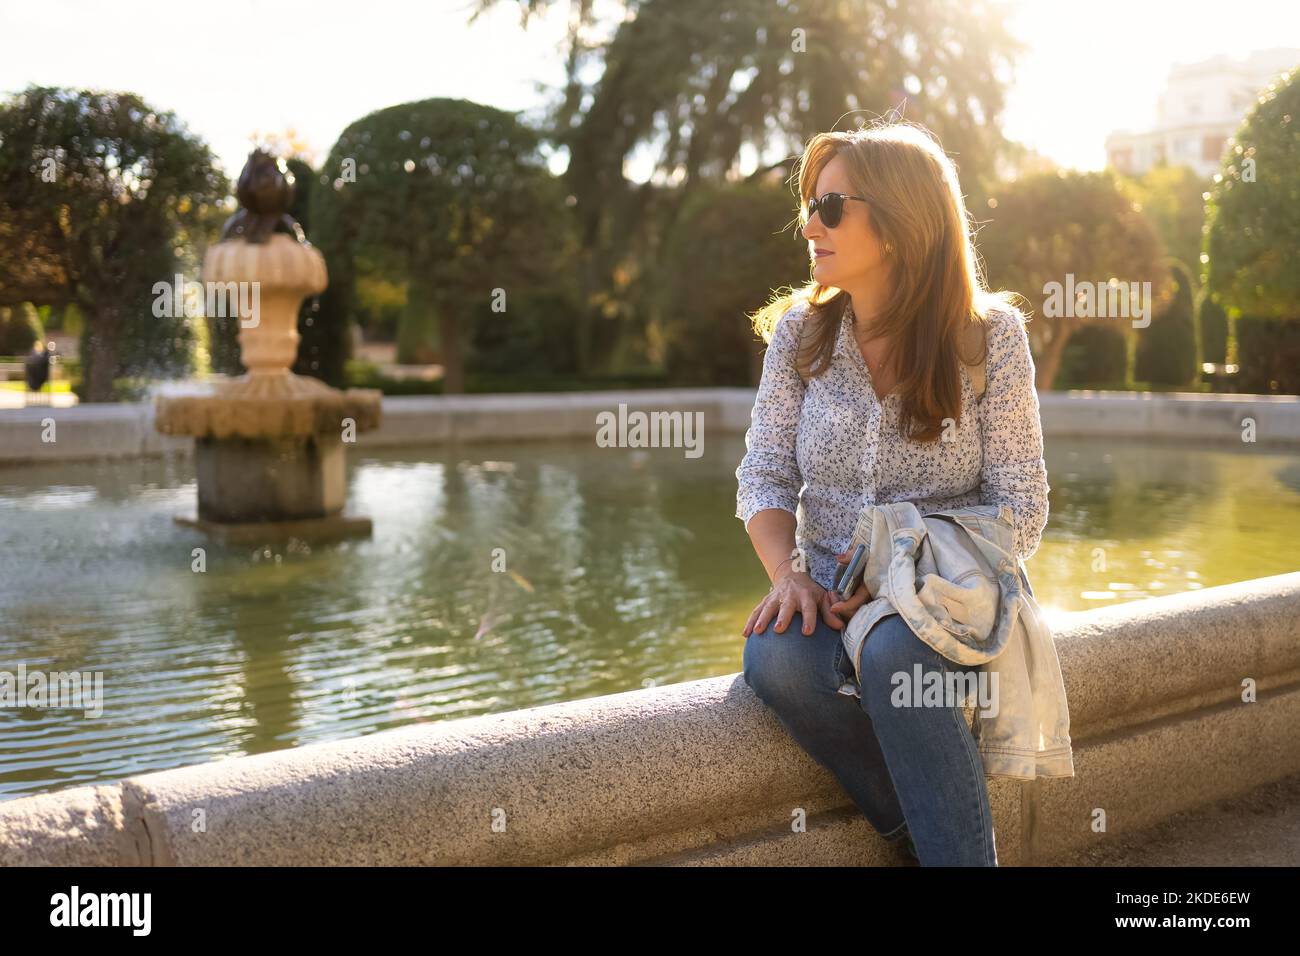 Donna seduta sul bordo di una fontana in un parco pubblico con i raggi del sole che illuminano la scena da dietro. Foto Stock